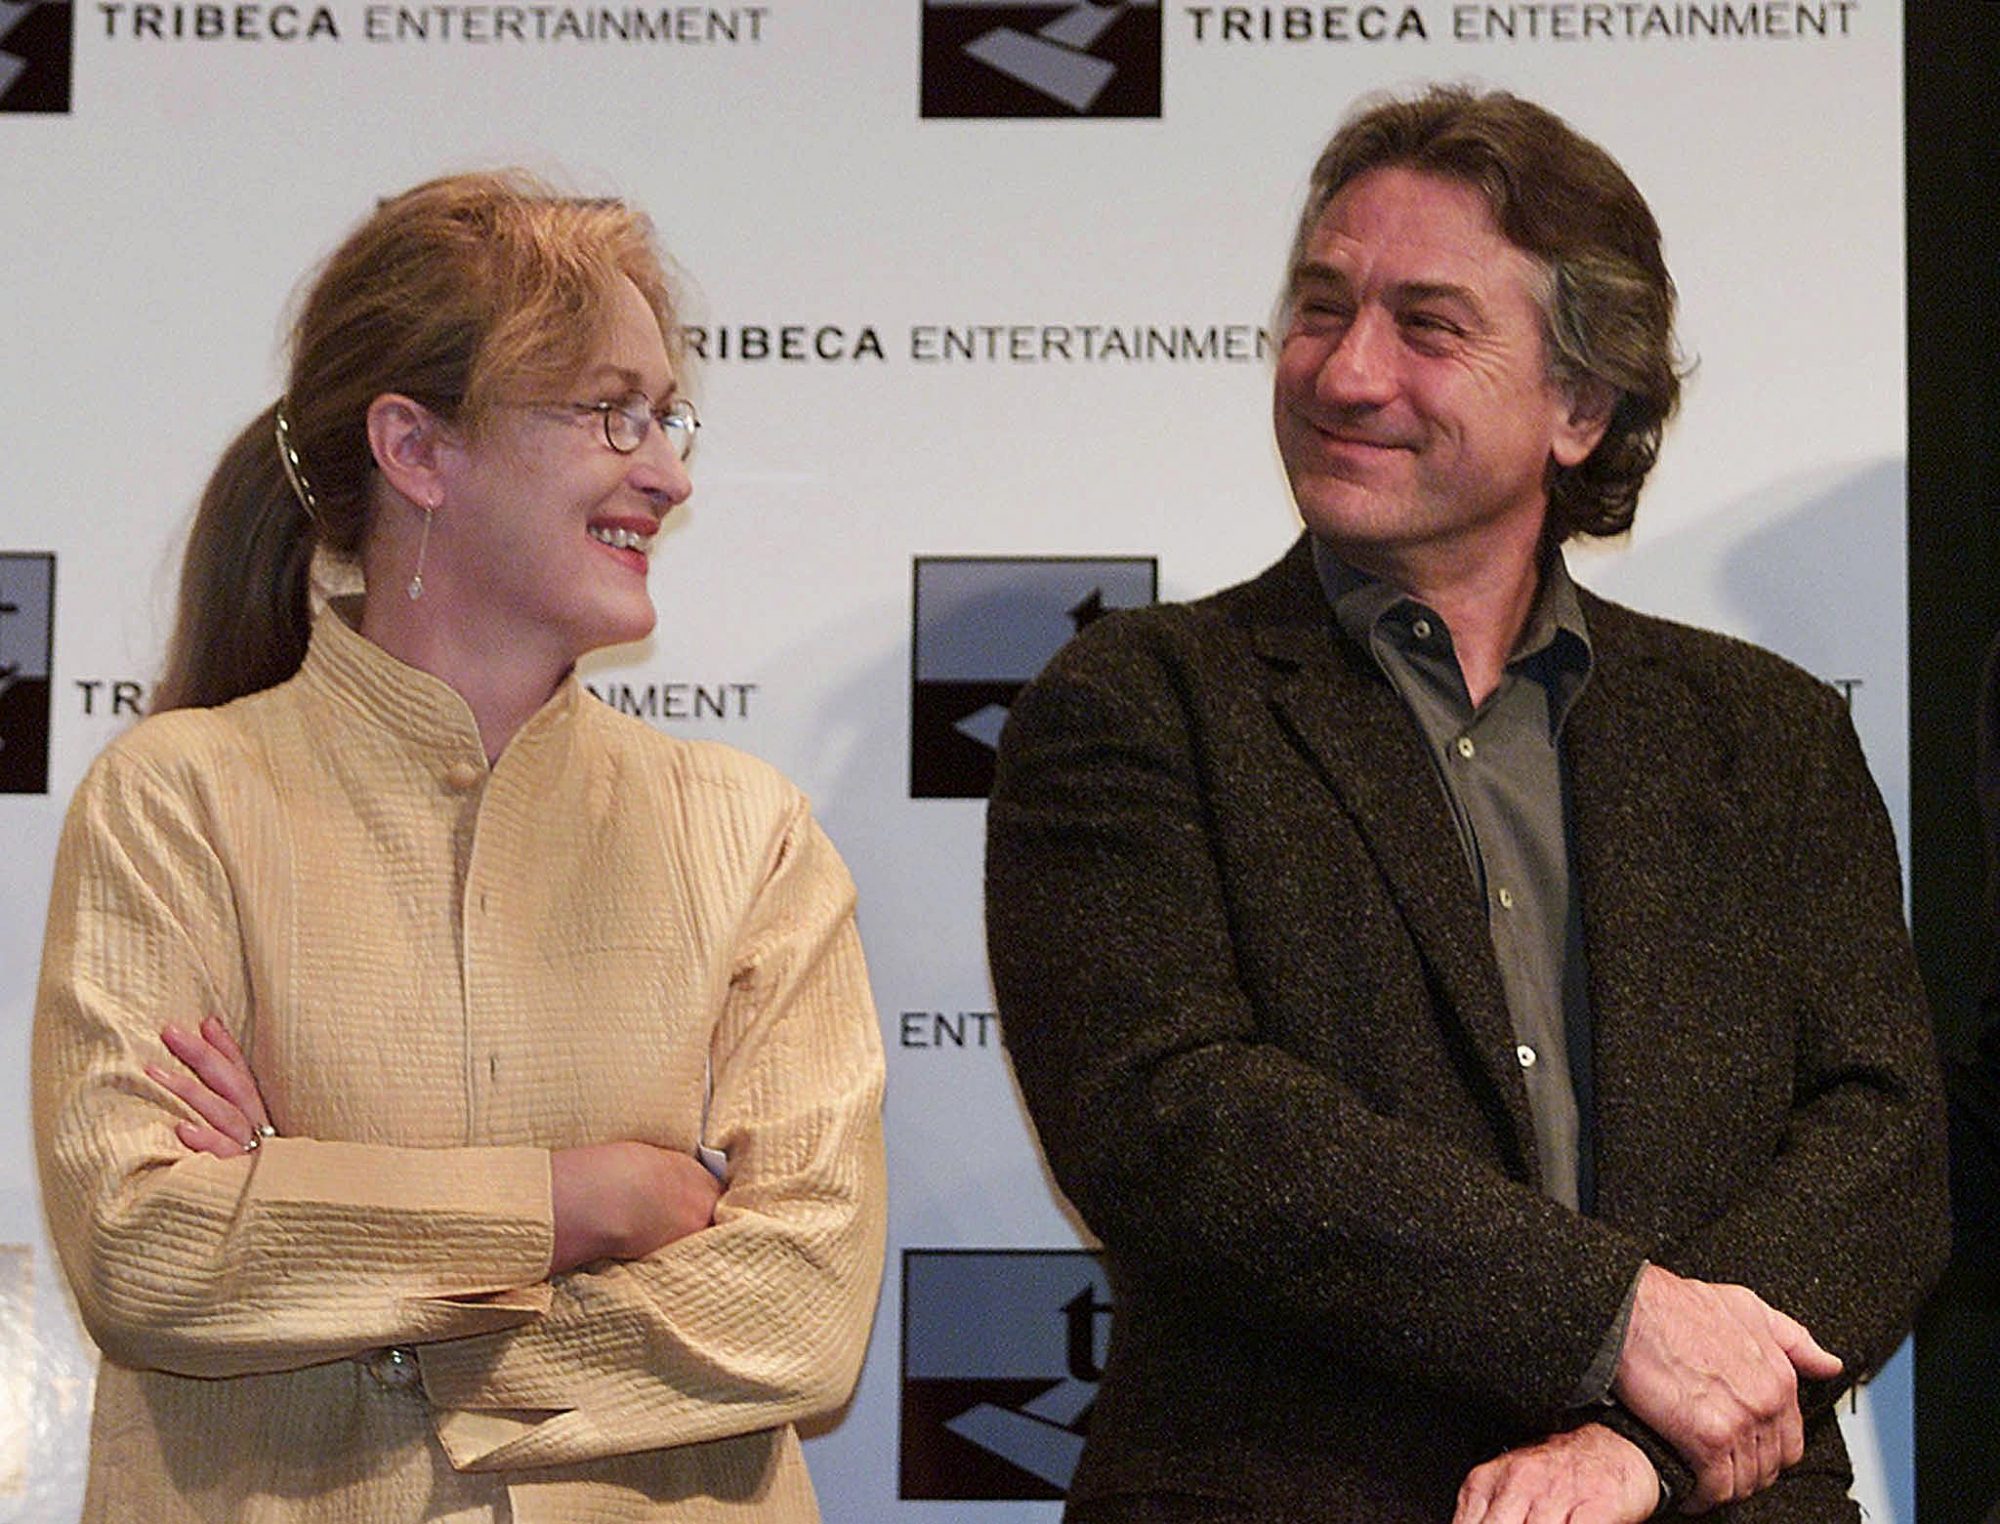 Robert-De-Niro-Meryl-Streep.jpg